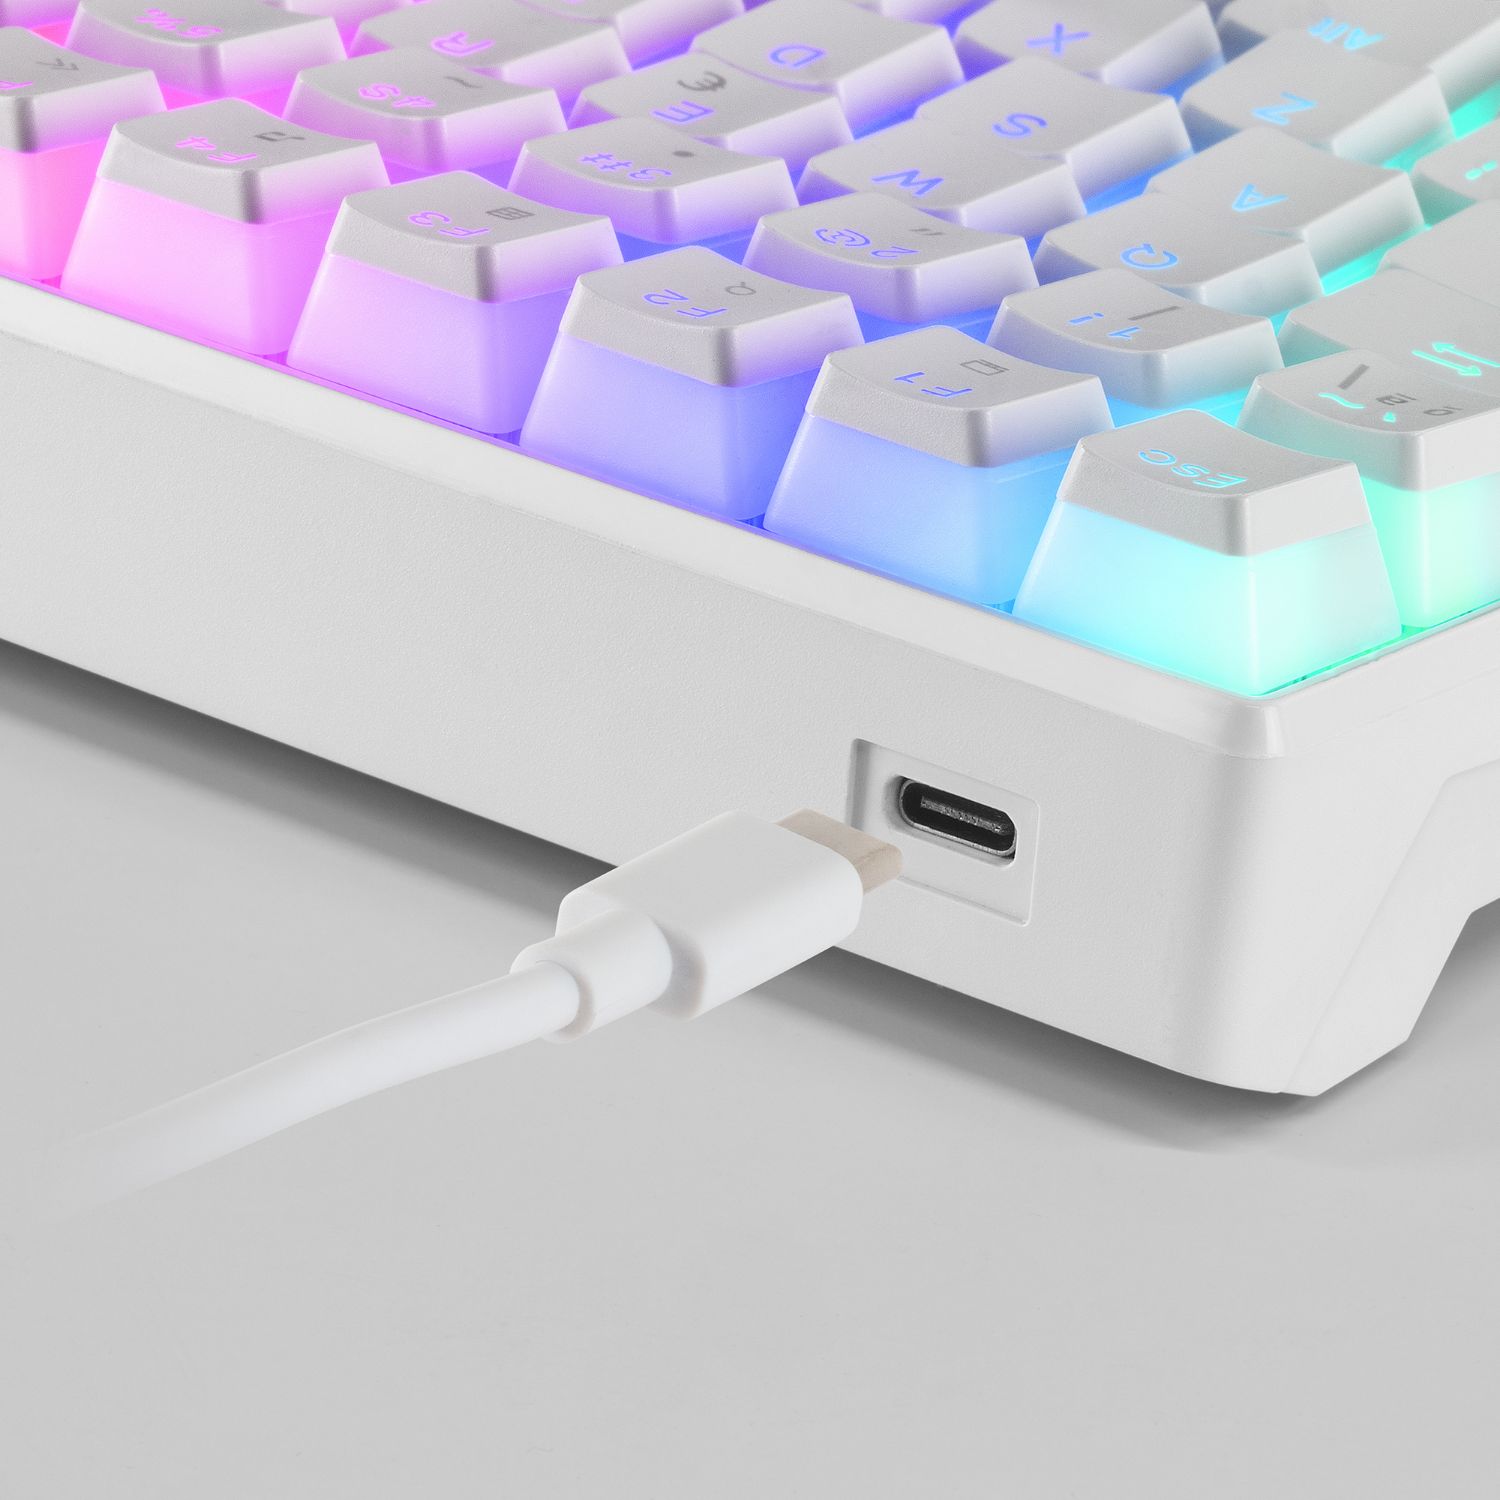 MKULTRAWBRES - Teclado Mecnico Mars Gaming LED RGB Antifantasma Outemu Brown USB Cable 1.7m Blanco (MKULTRAWBRES)